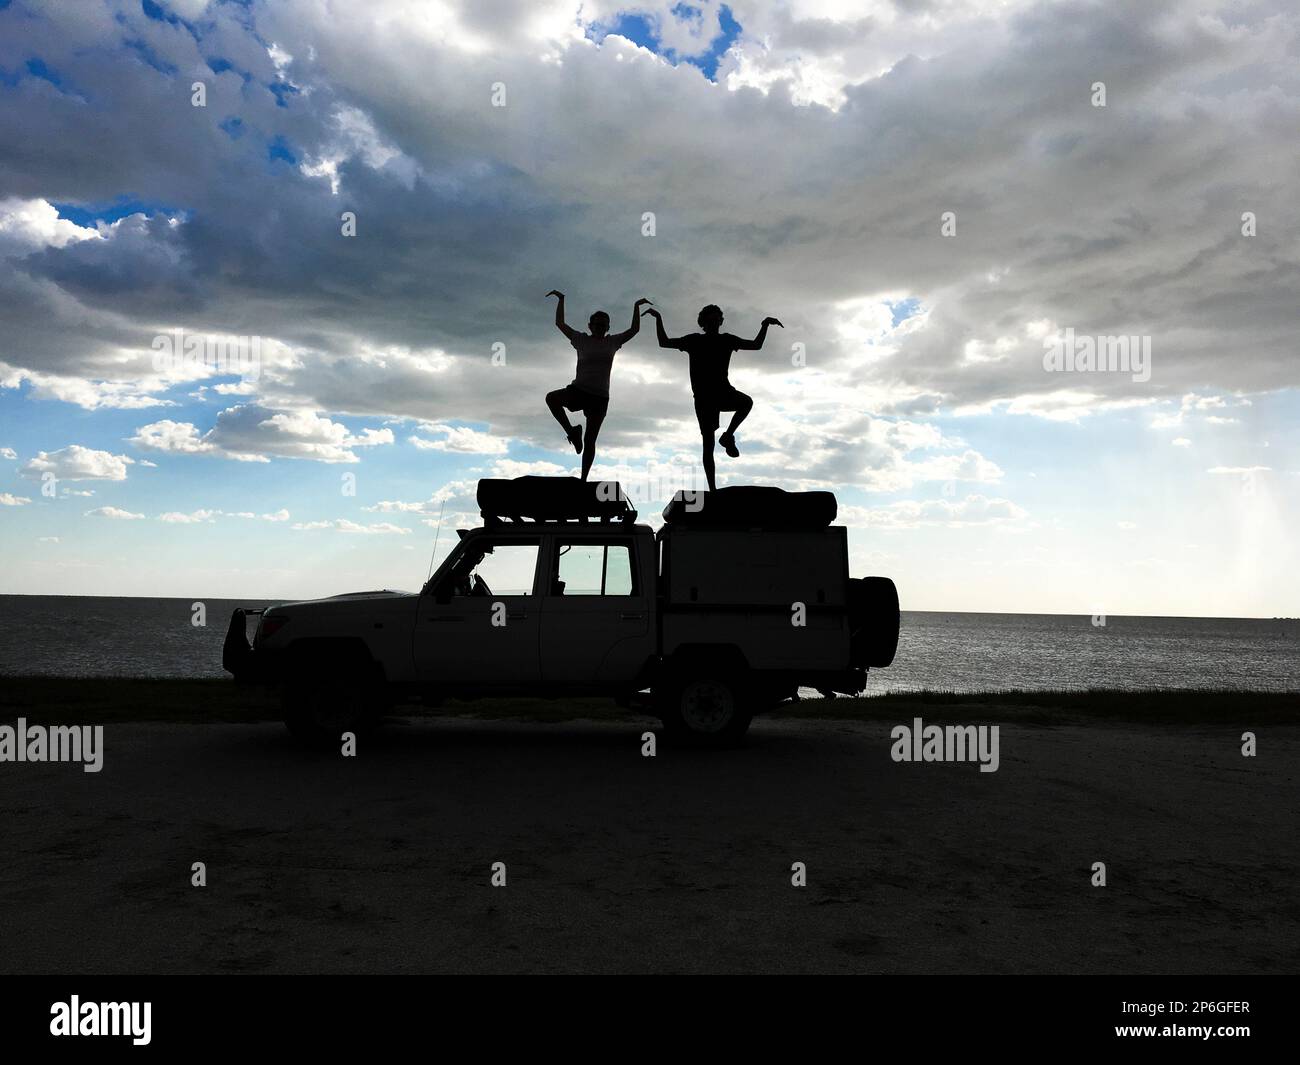 2 giovani adulti in piedi su una jeep come silhouette che eseguono figure umane. Nuvole tempesta nel cielo. Makgadikgadi Salt Pans, Botswana, Africa Foto Stock